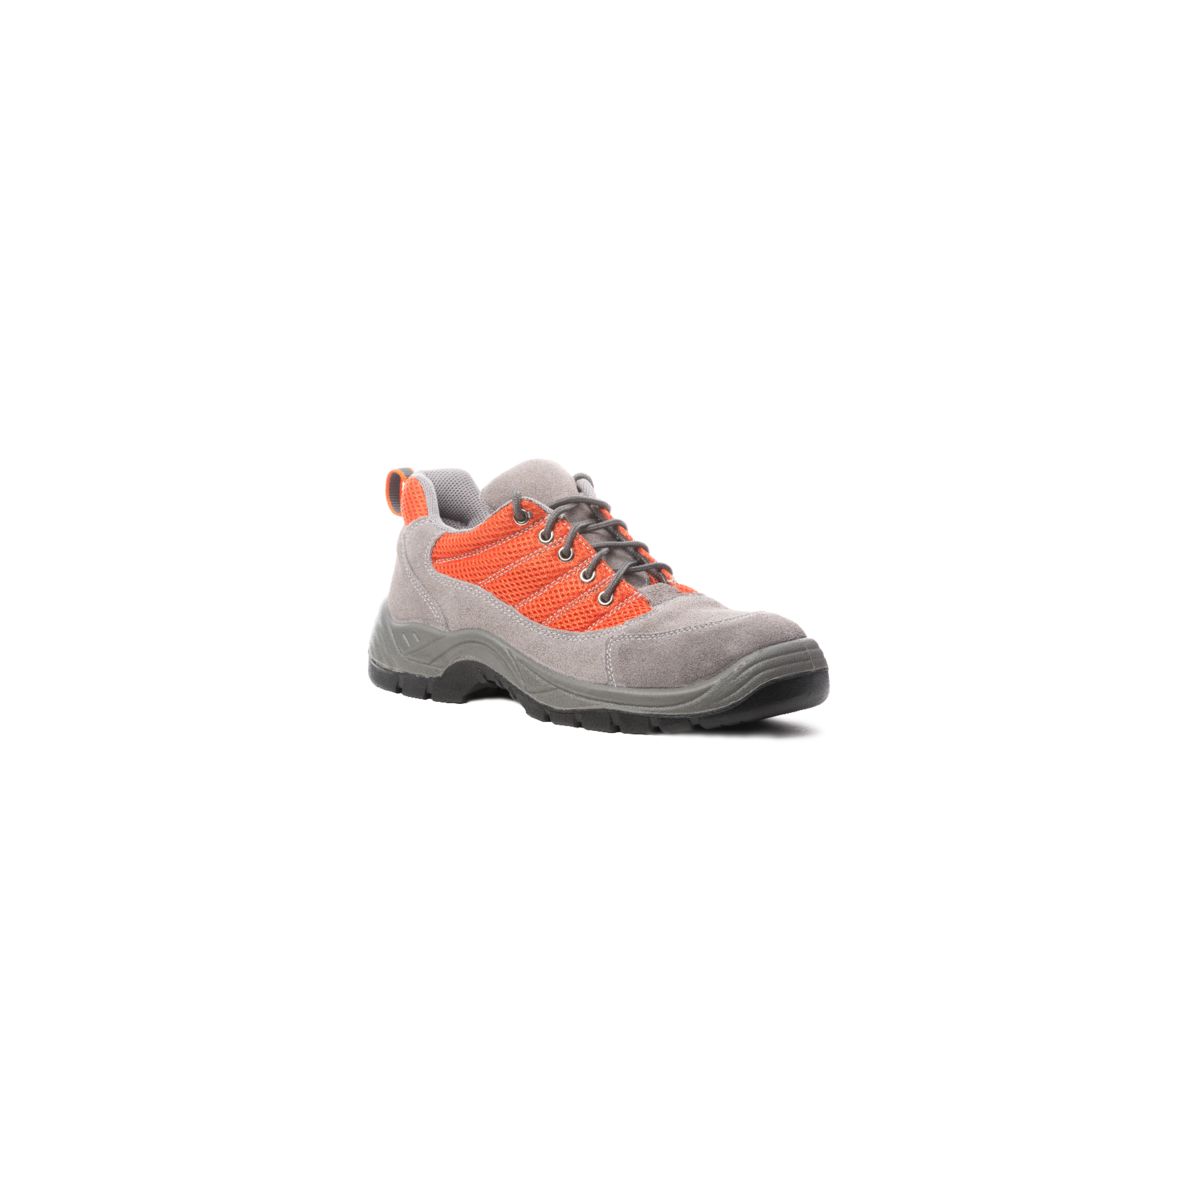 Chaussures de sécurité SPINELLE S1P basse orange - COVERGUARD - Taille 36 0